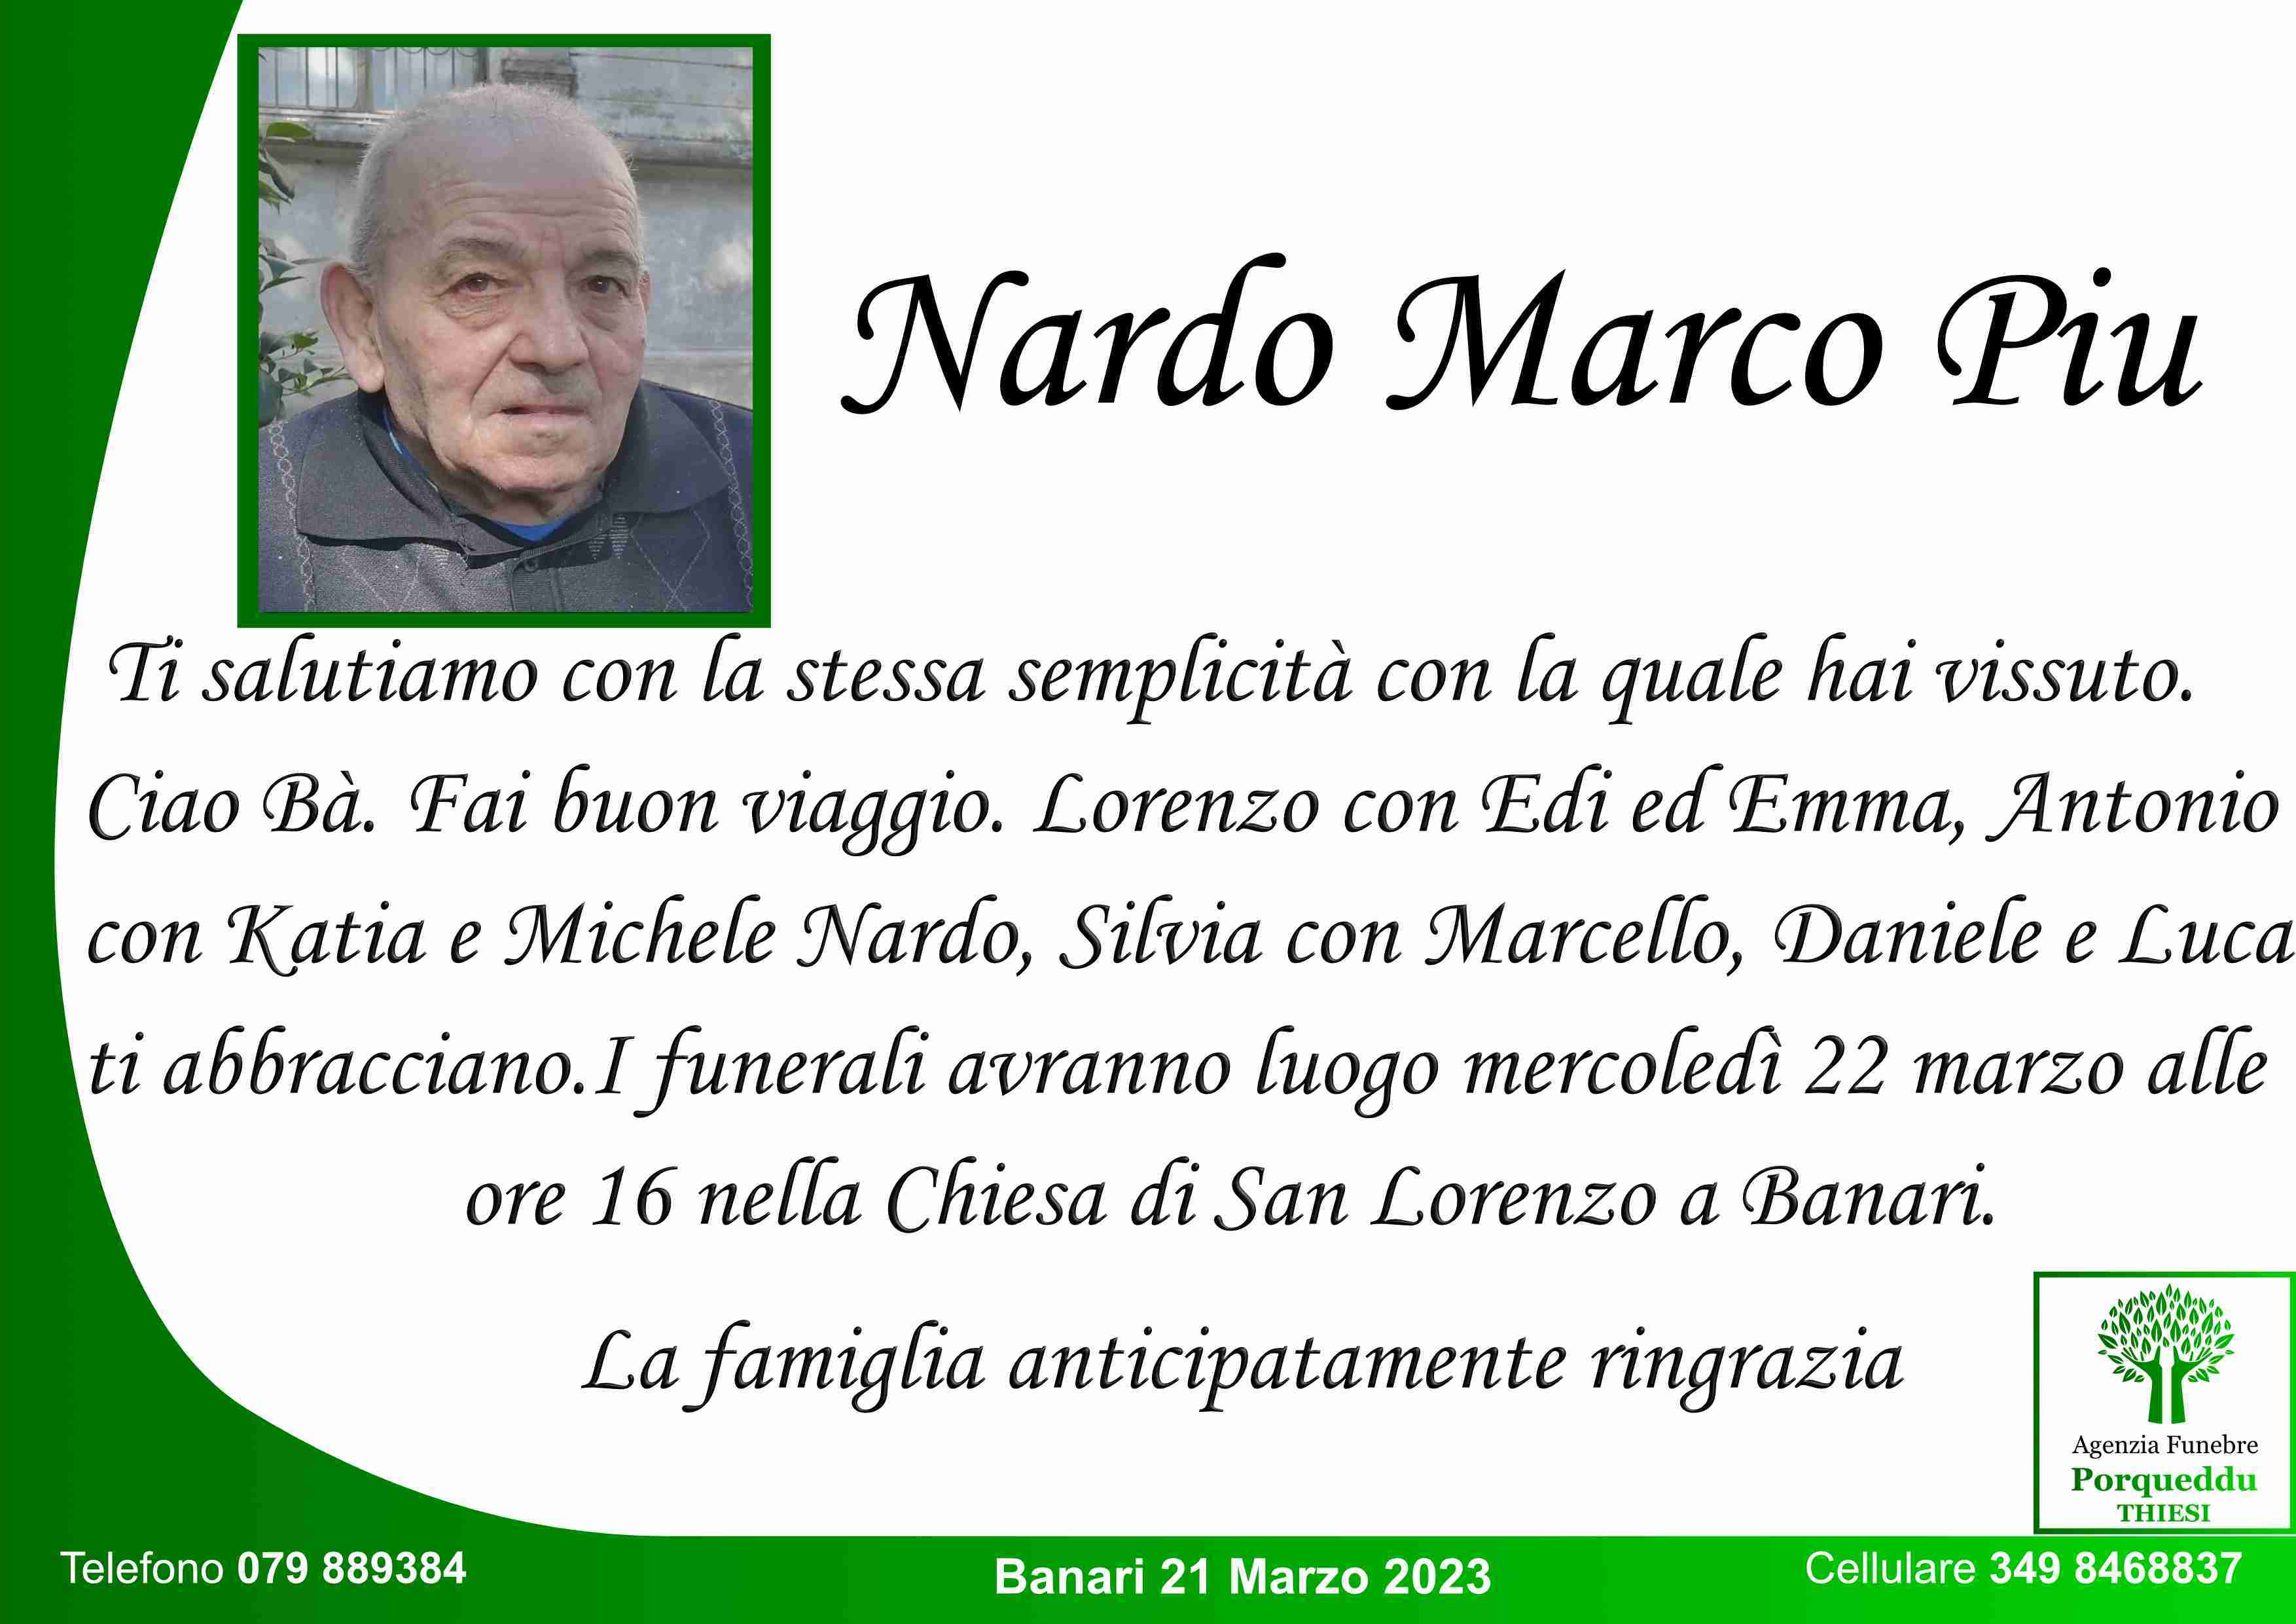 Nardo Marco Piu